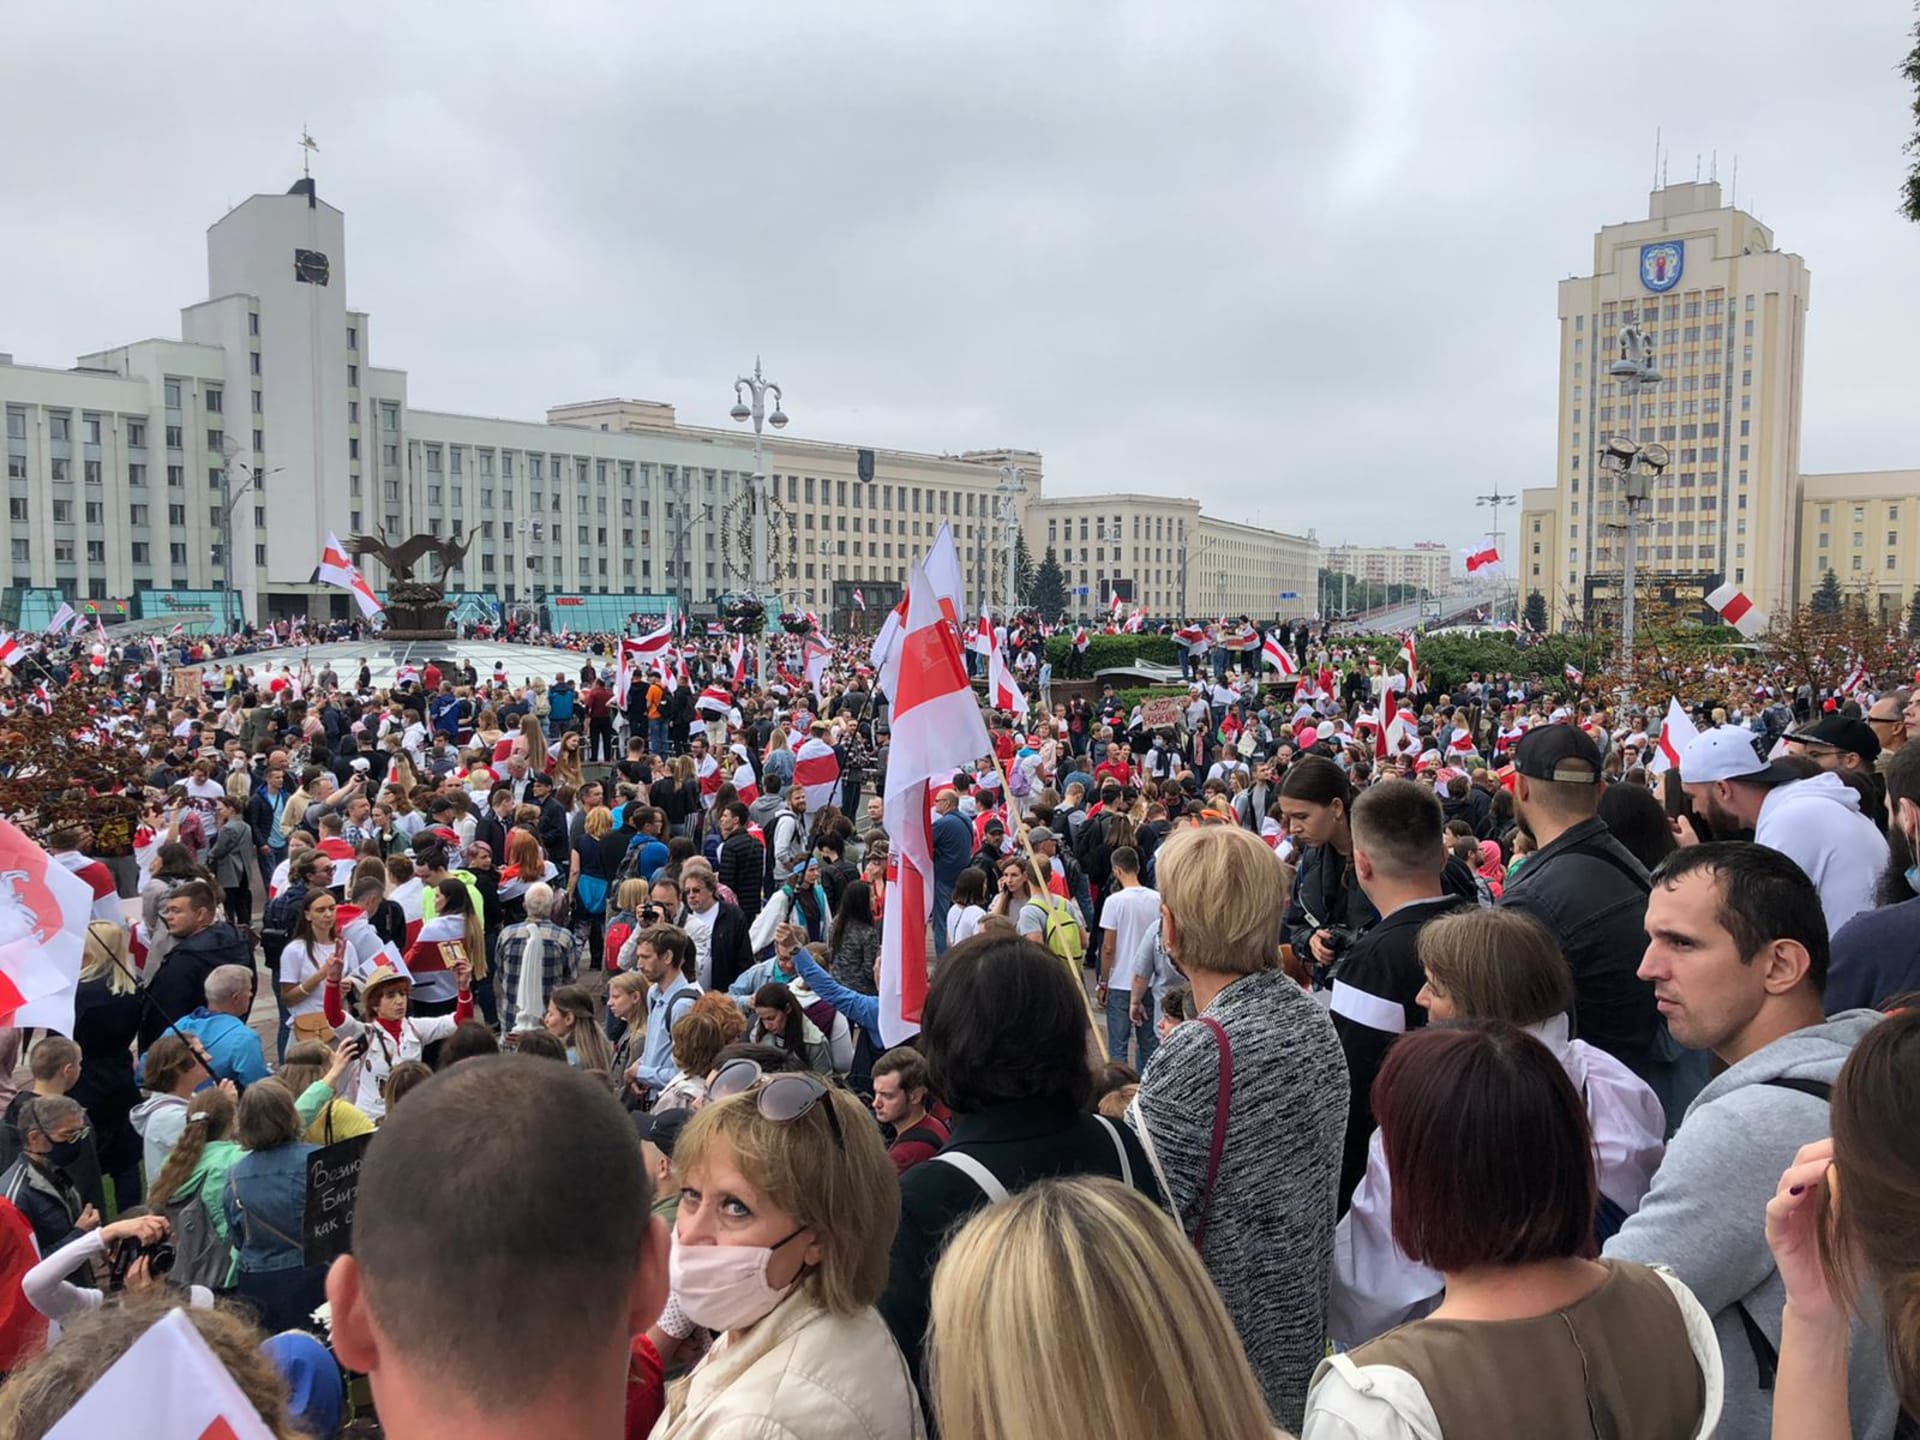 Do ulic v Minsku vyšly desítky tisíc lidí